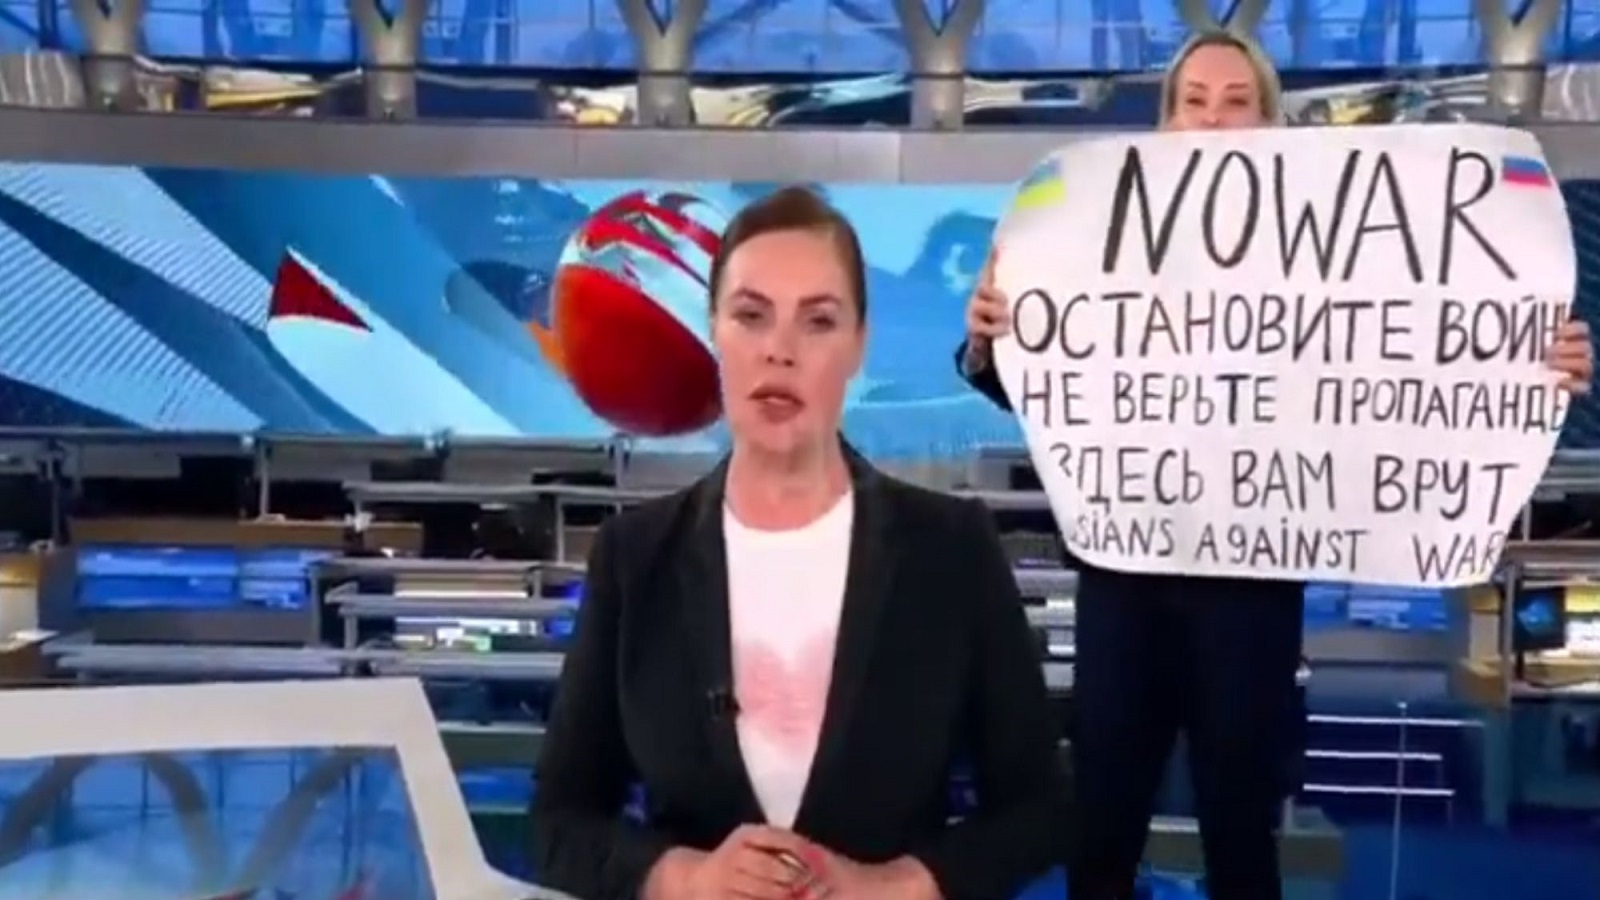 الصحافية الروسية صاحبة لافتة "أوقفوا الحرب"...تهرب من الإقامة الجبرية